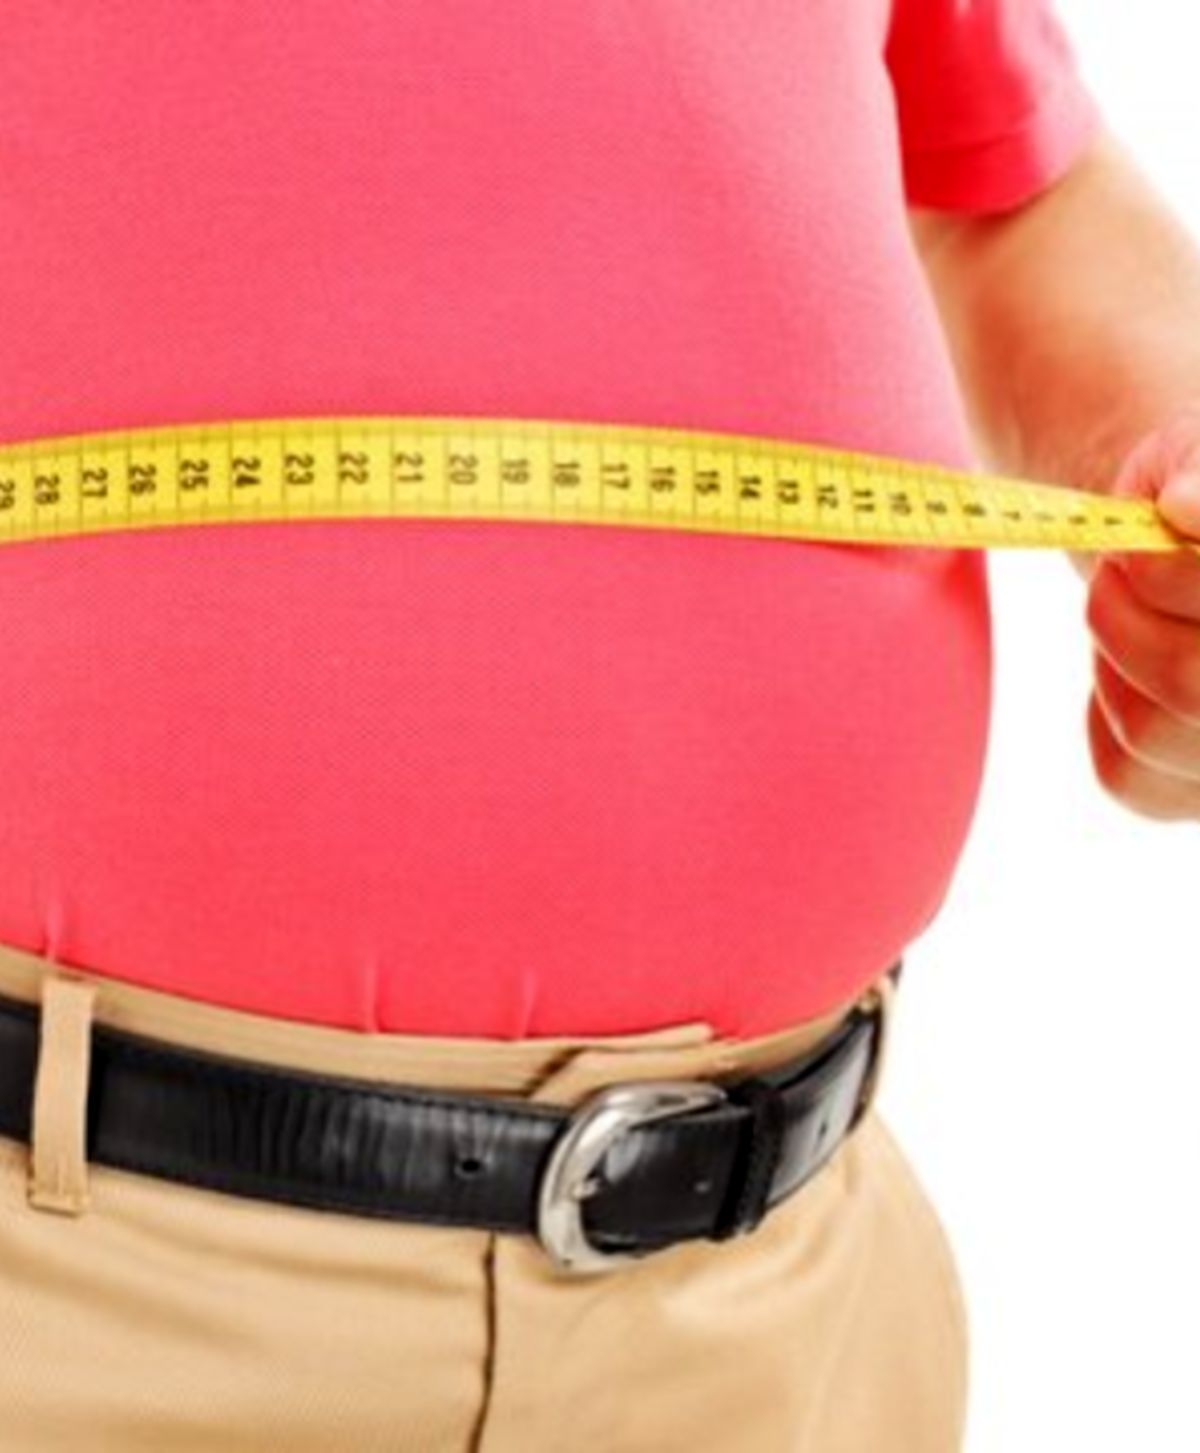 خطر بیشتر پروستات در مردان چاق